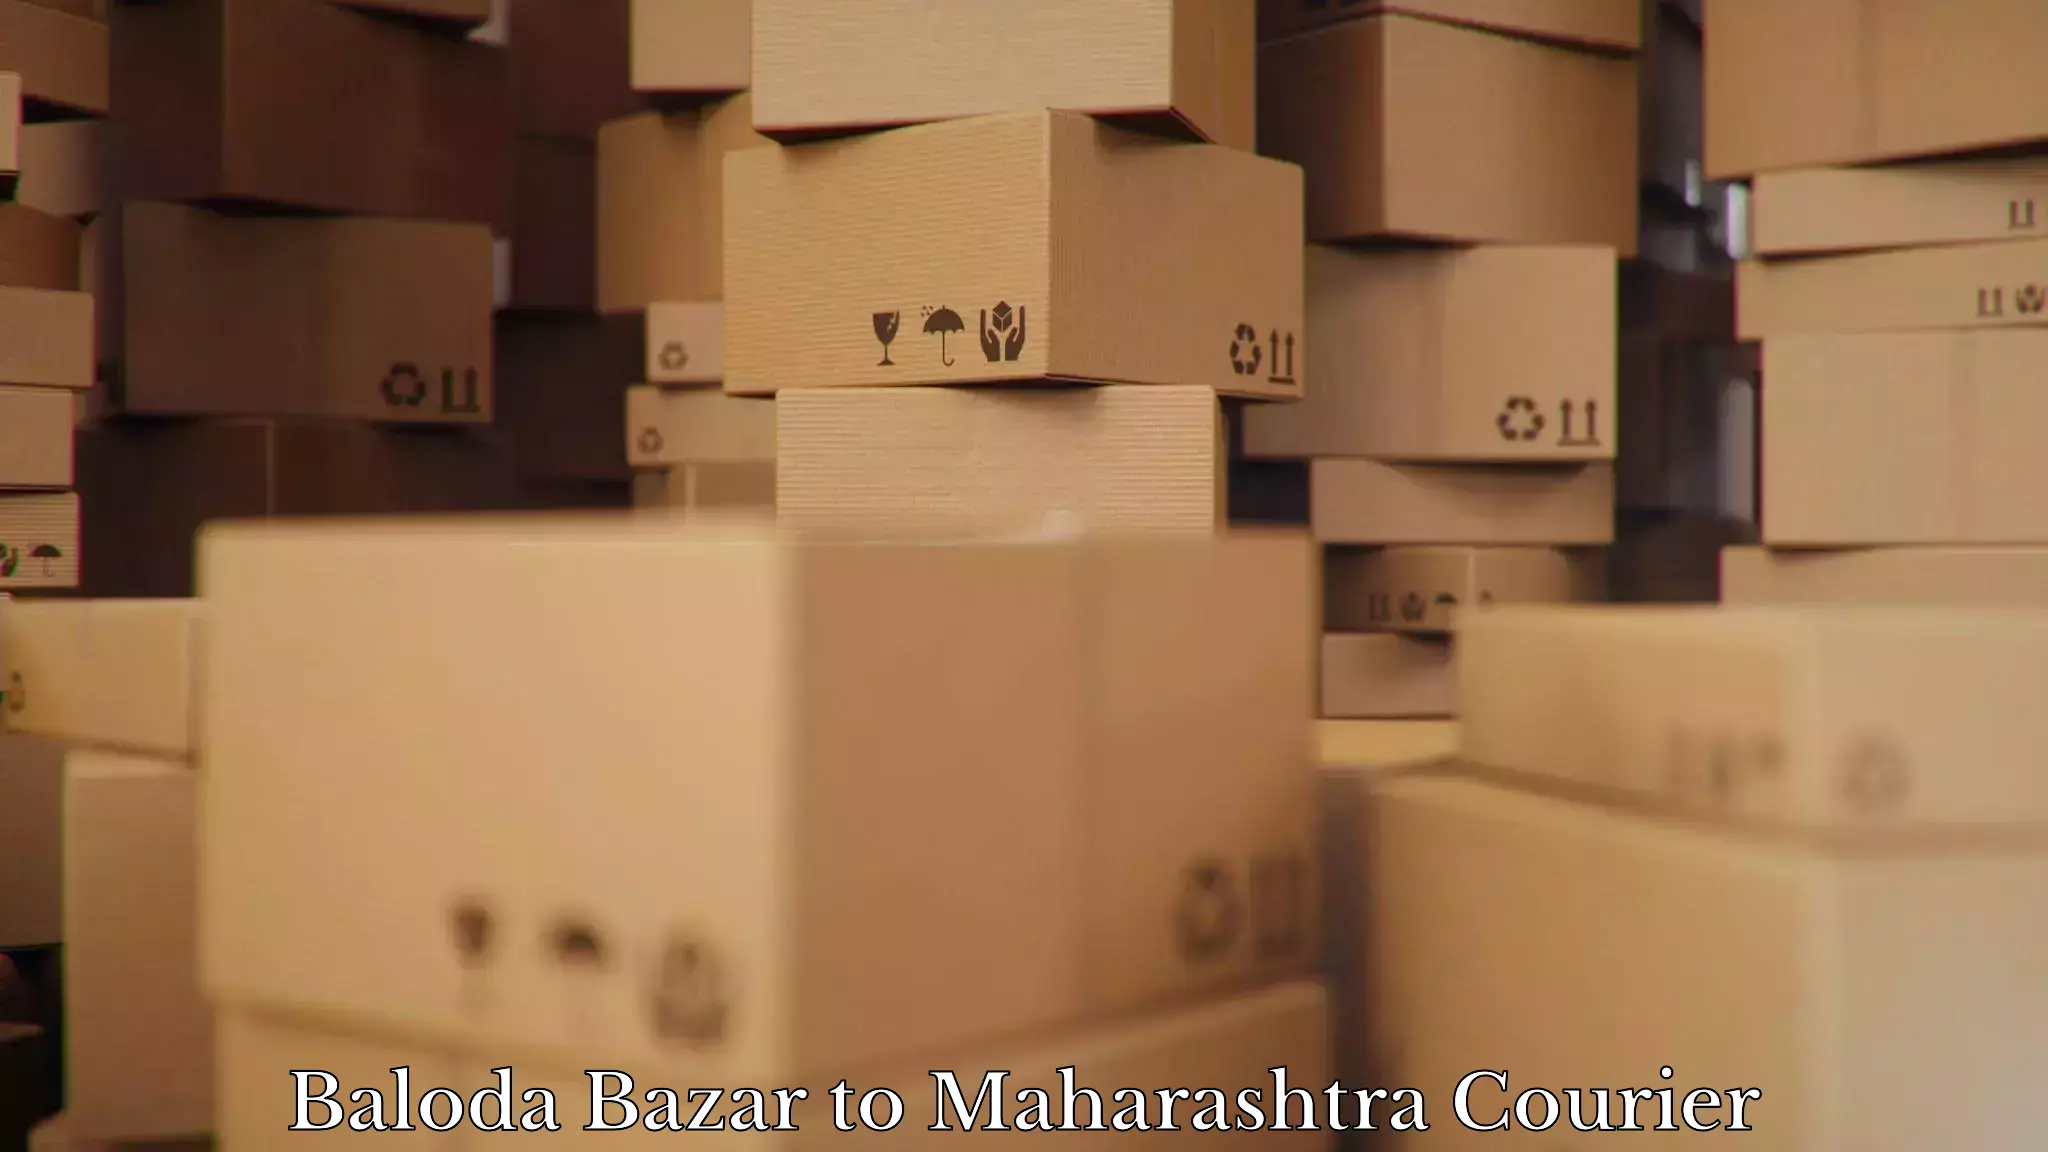 Furniture moving assistance Baloda Bazar to Nandurbar